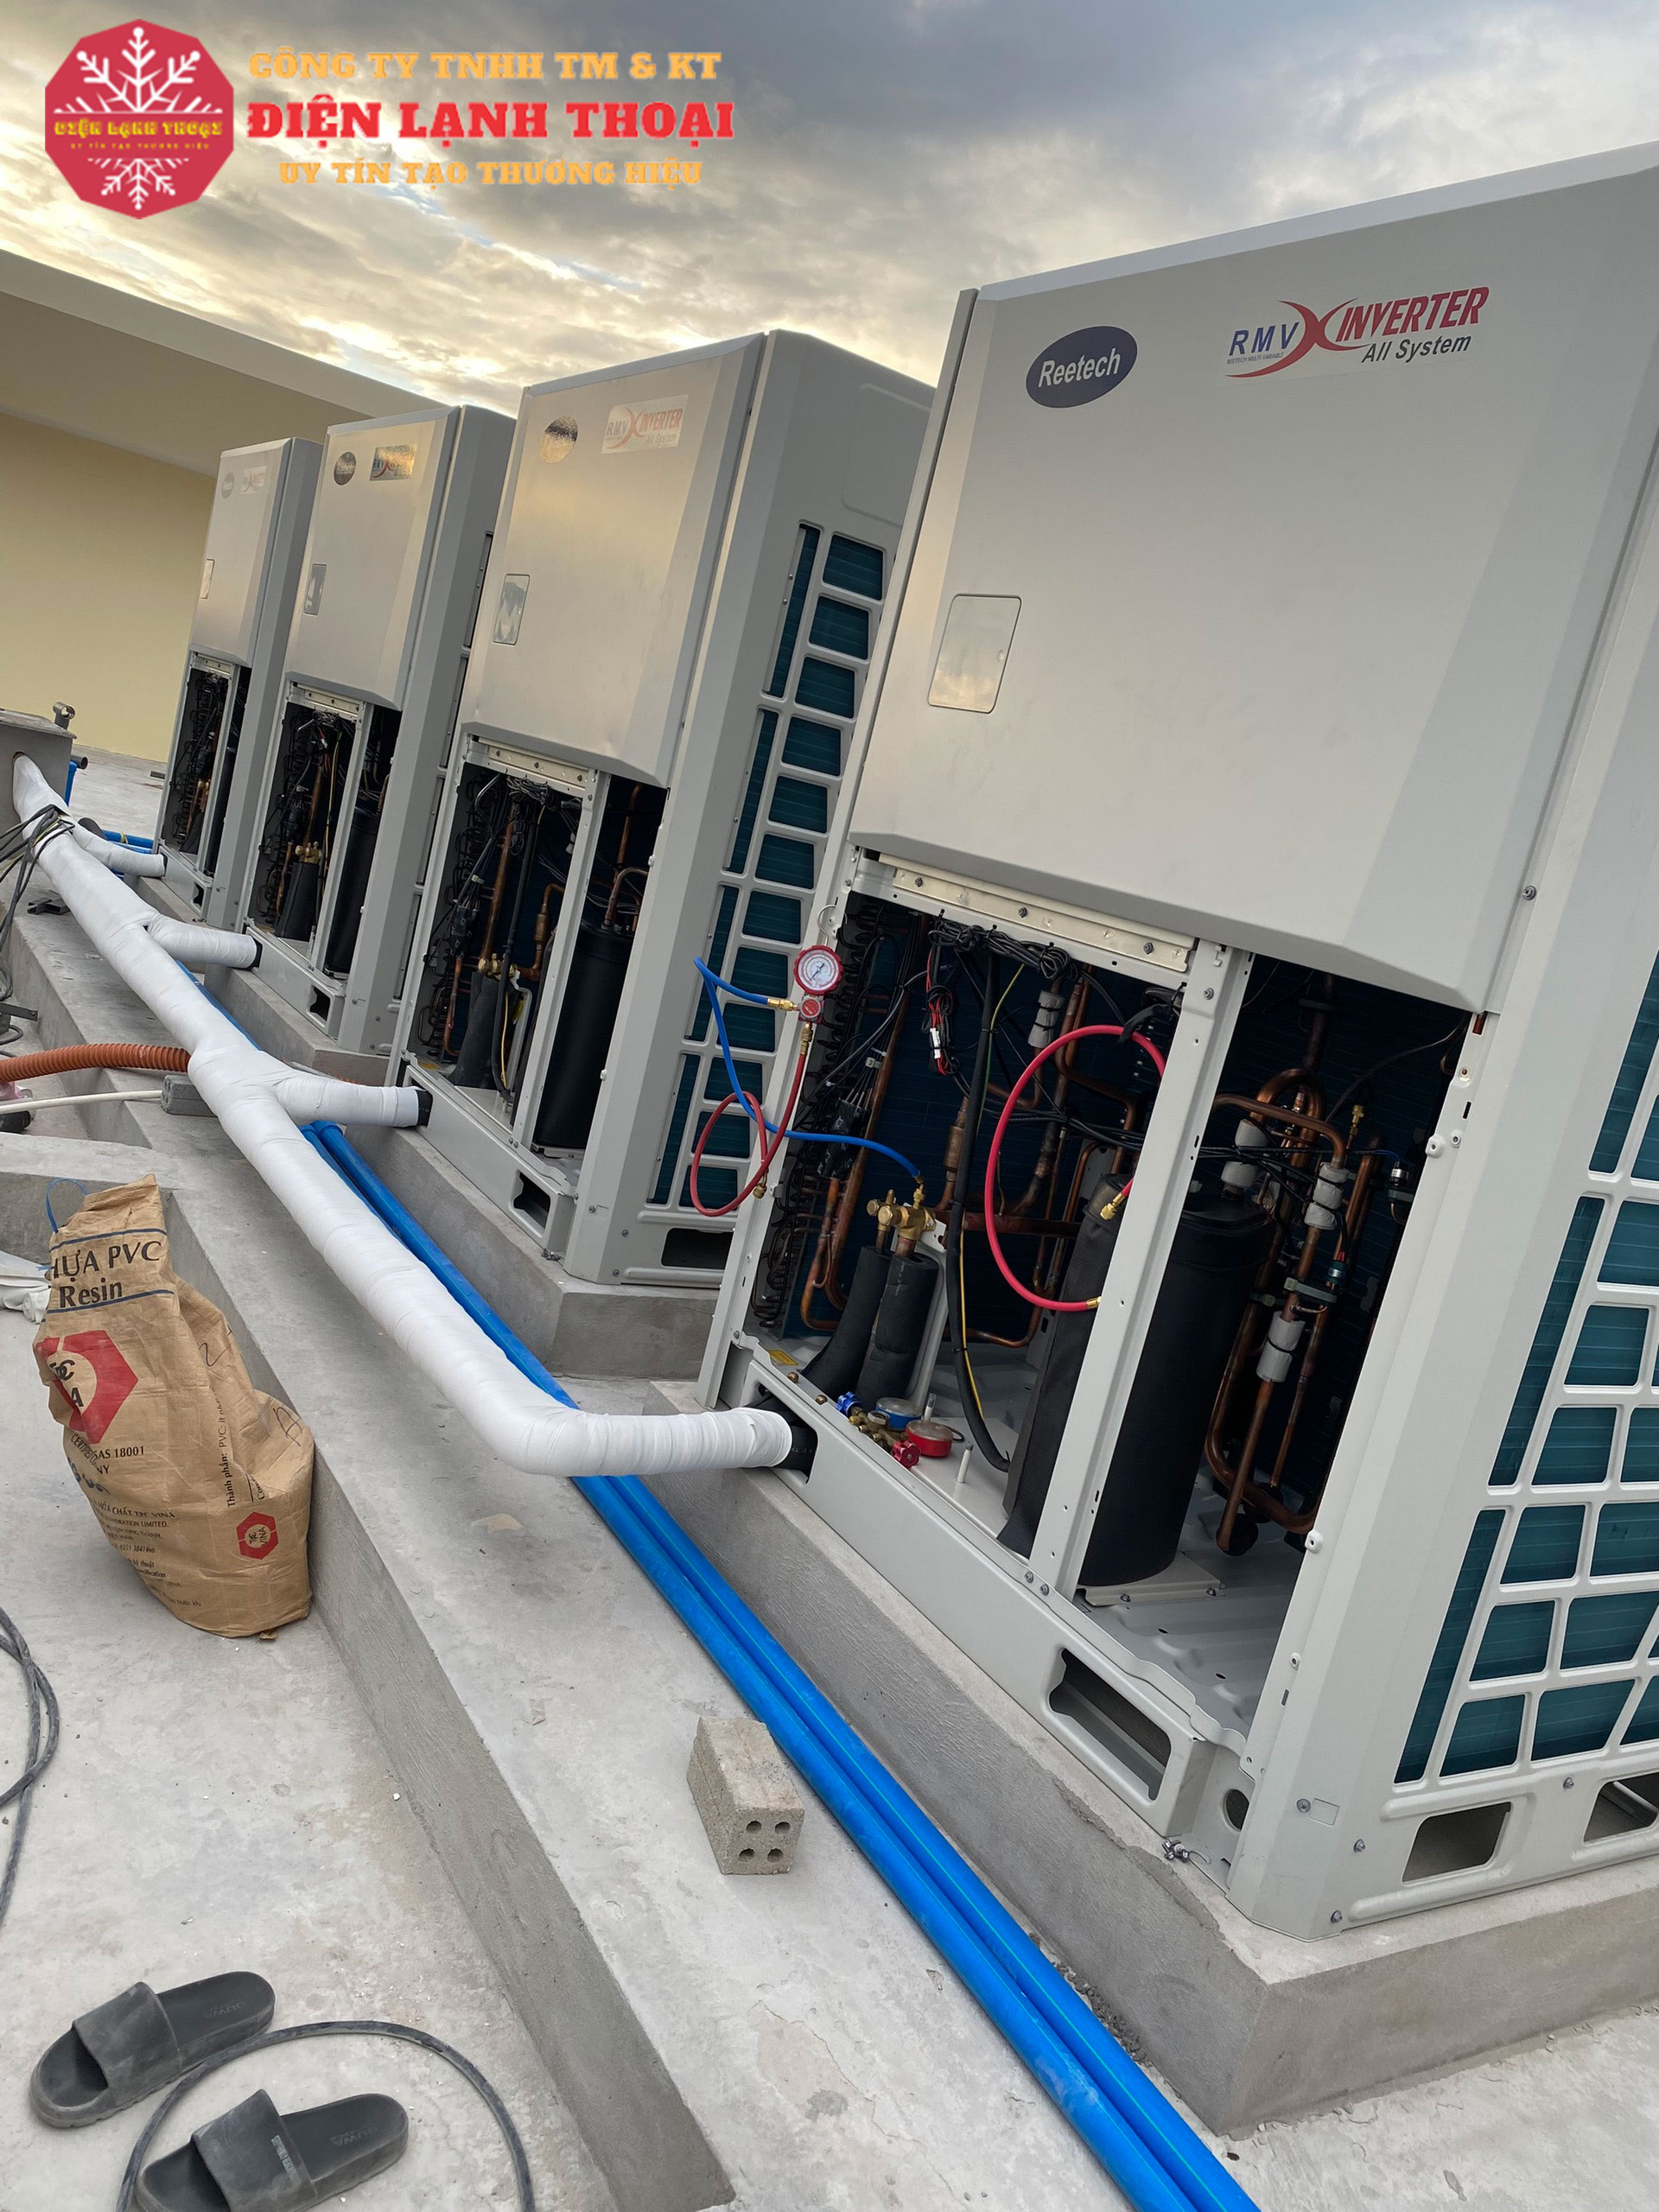 Vệ sinh máy lạnh trung tâm VRV-VRF định kỳ đảm bảo độ bền sản phẩm